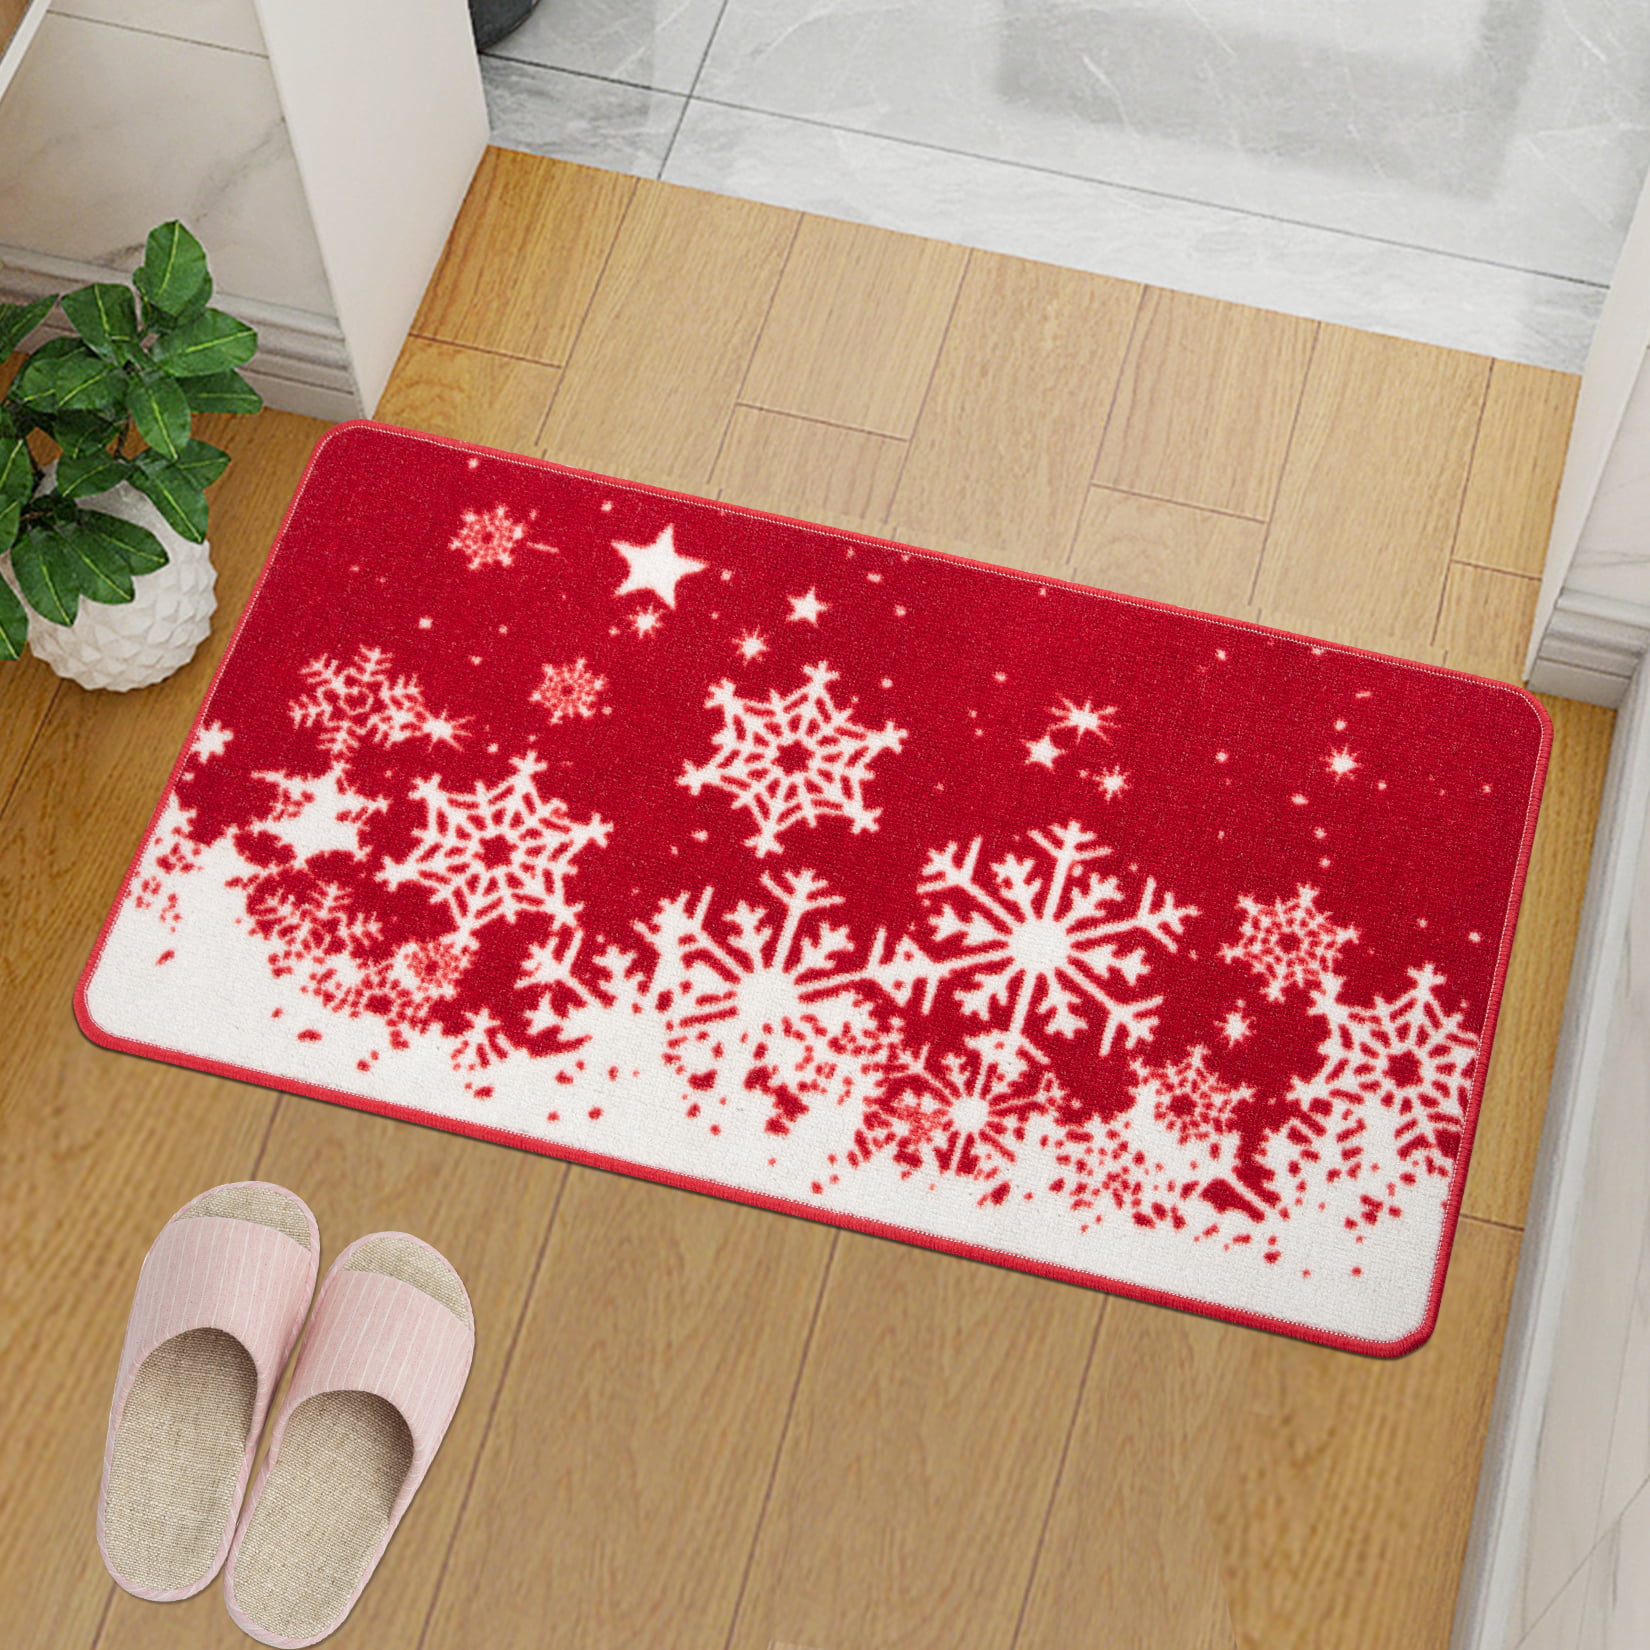 Christmas Tree Mat Xmas Welcome Decorative Doormat Non Slip Winter Floor  Mats New year Frontdoor Accessories Home Supplies - AliExpress